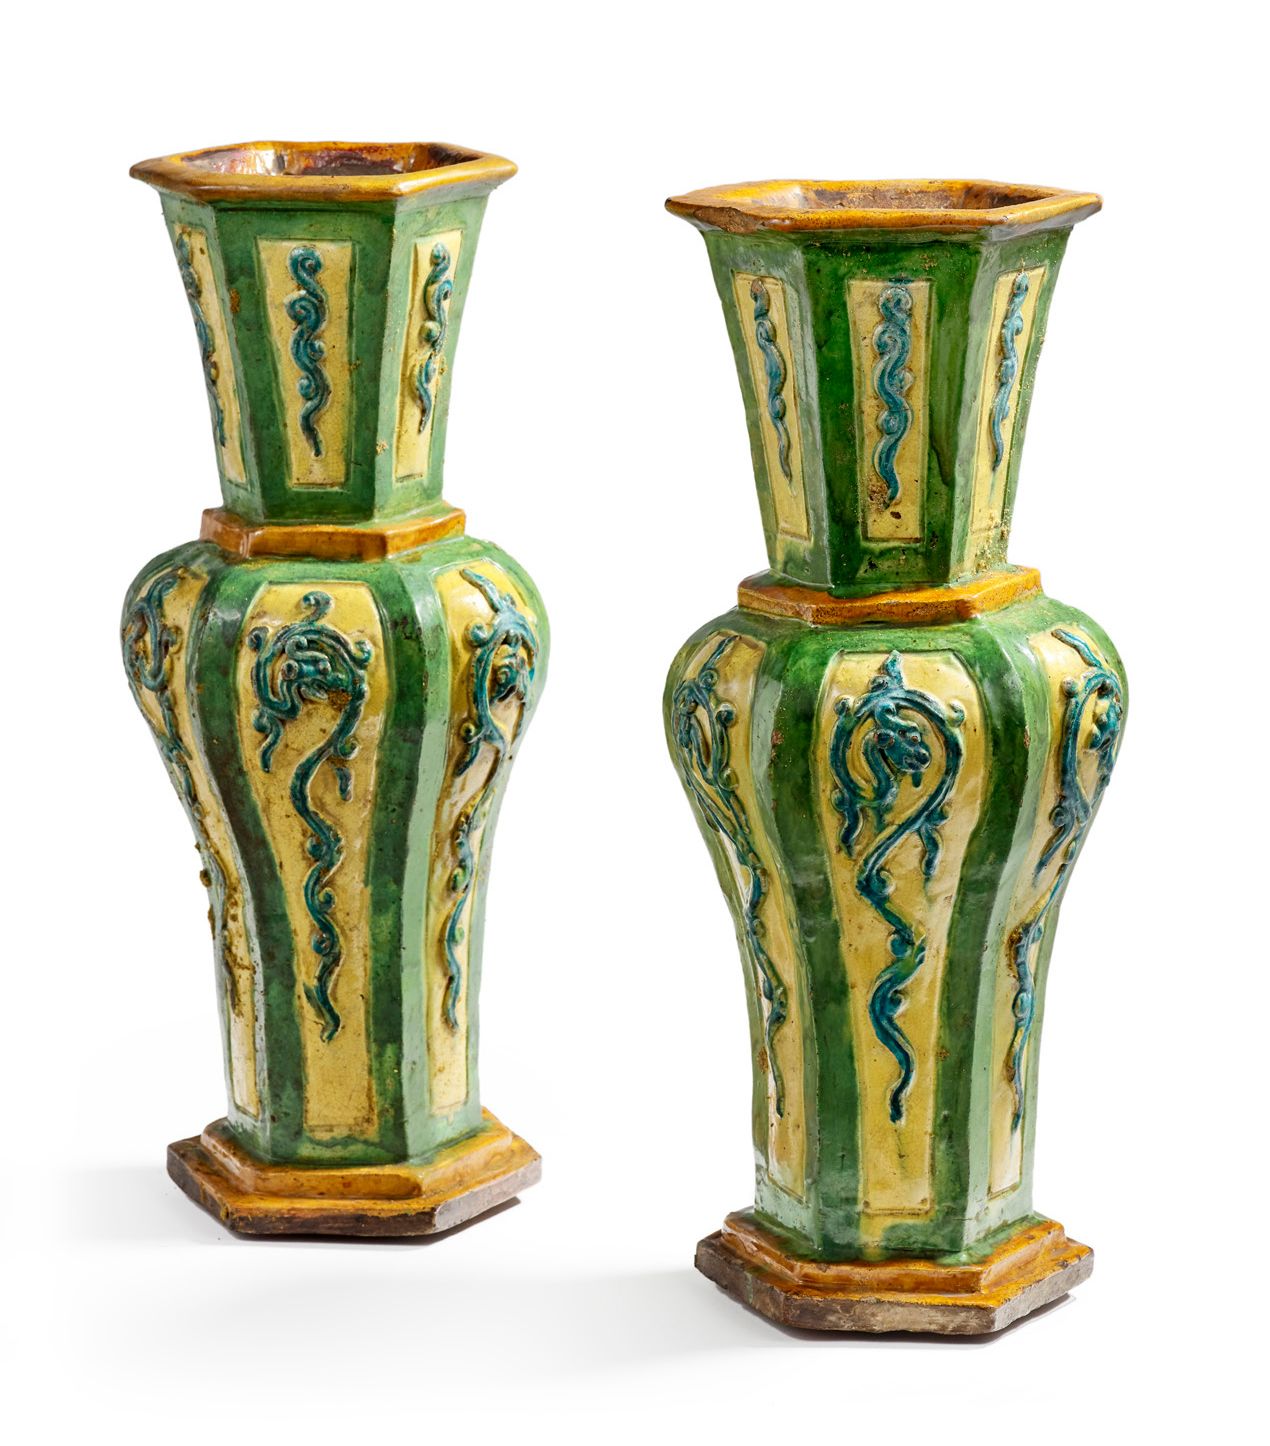 CHINE XVIIIe SIÈCLE, PÉRIODE KANGXI (1661 - 1722) 
Paire de vases en terre cuite&hellip;